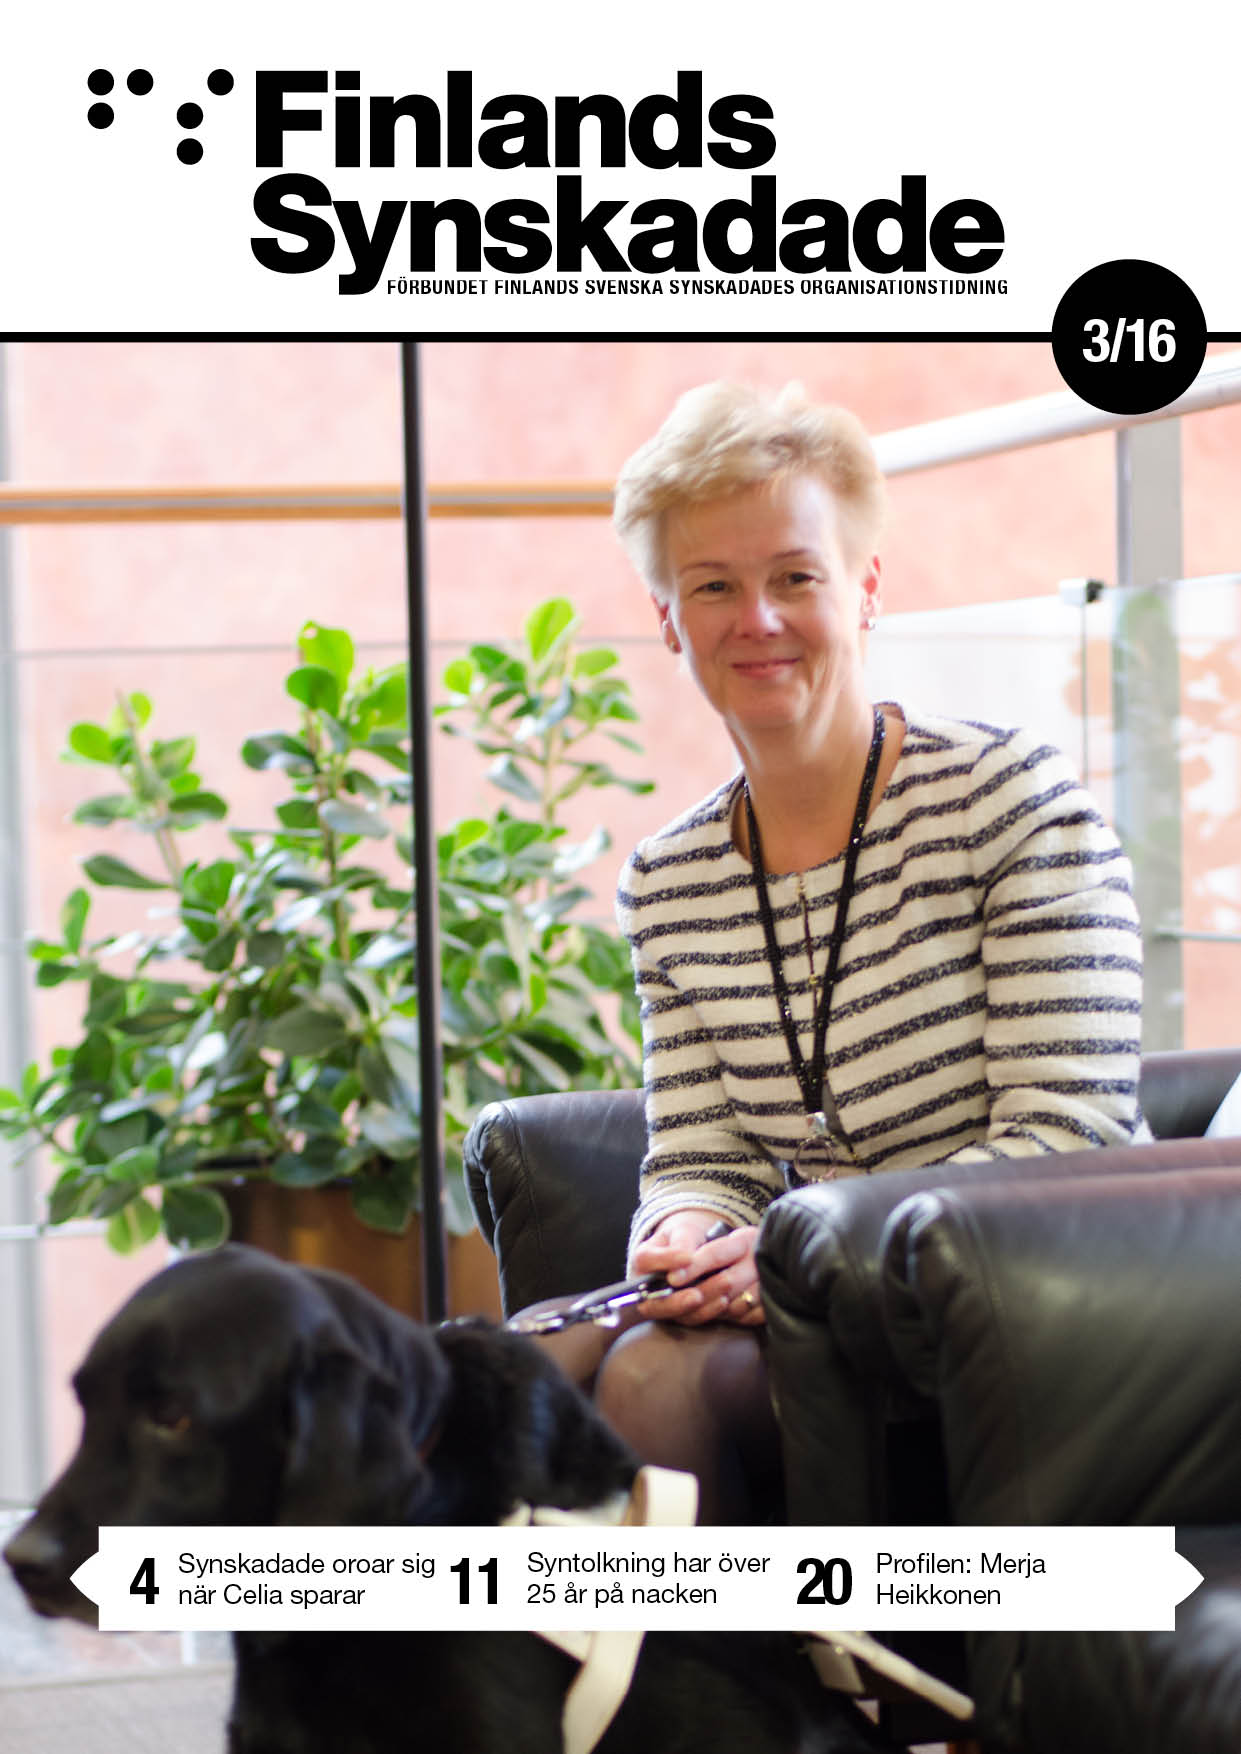 Merja Heikkinen kämpar för sina rättigheter. Hennes insats inom funktionshinderspolitiken är aktningsvärd. Hon sitter på en fåtölj med sin ledarhund framför sig. Foto: Sören Jonsson.